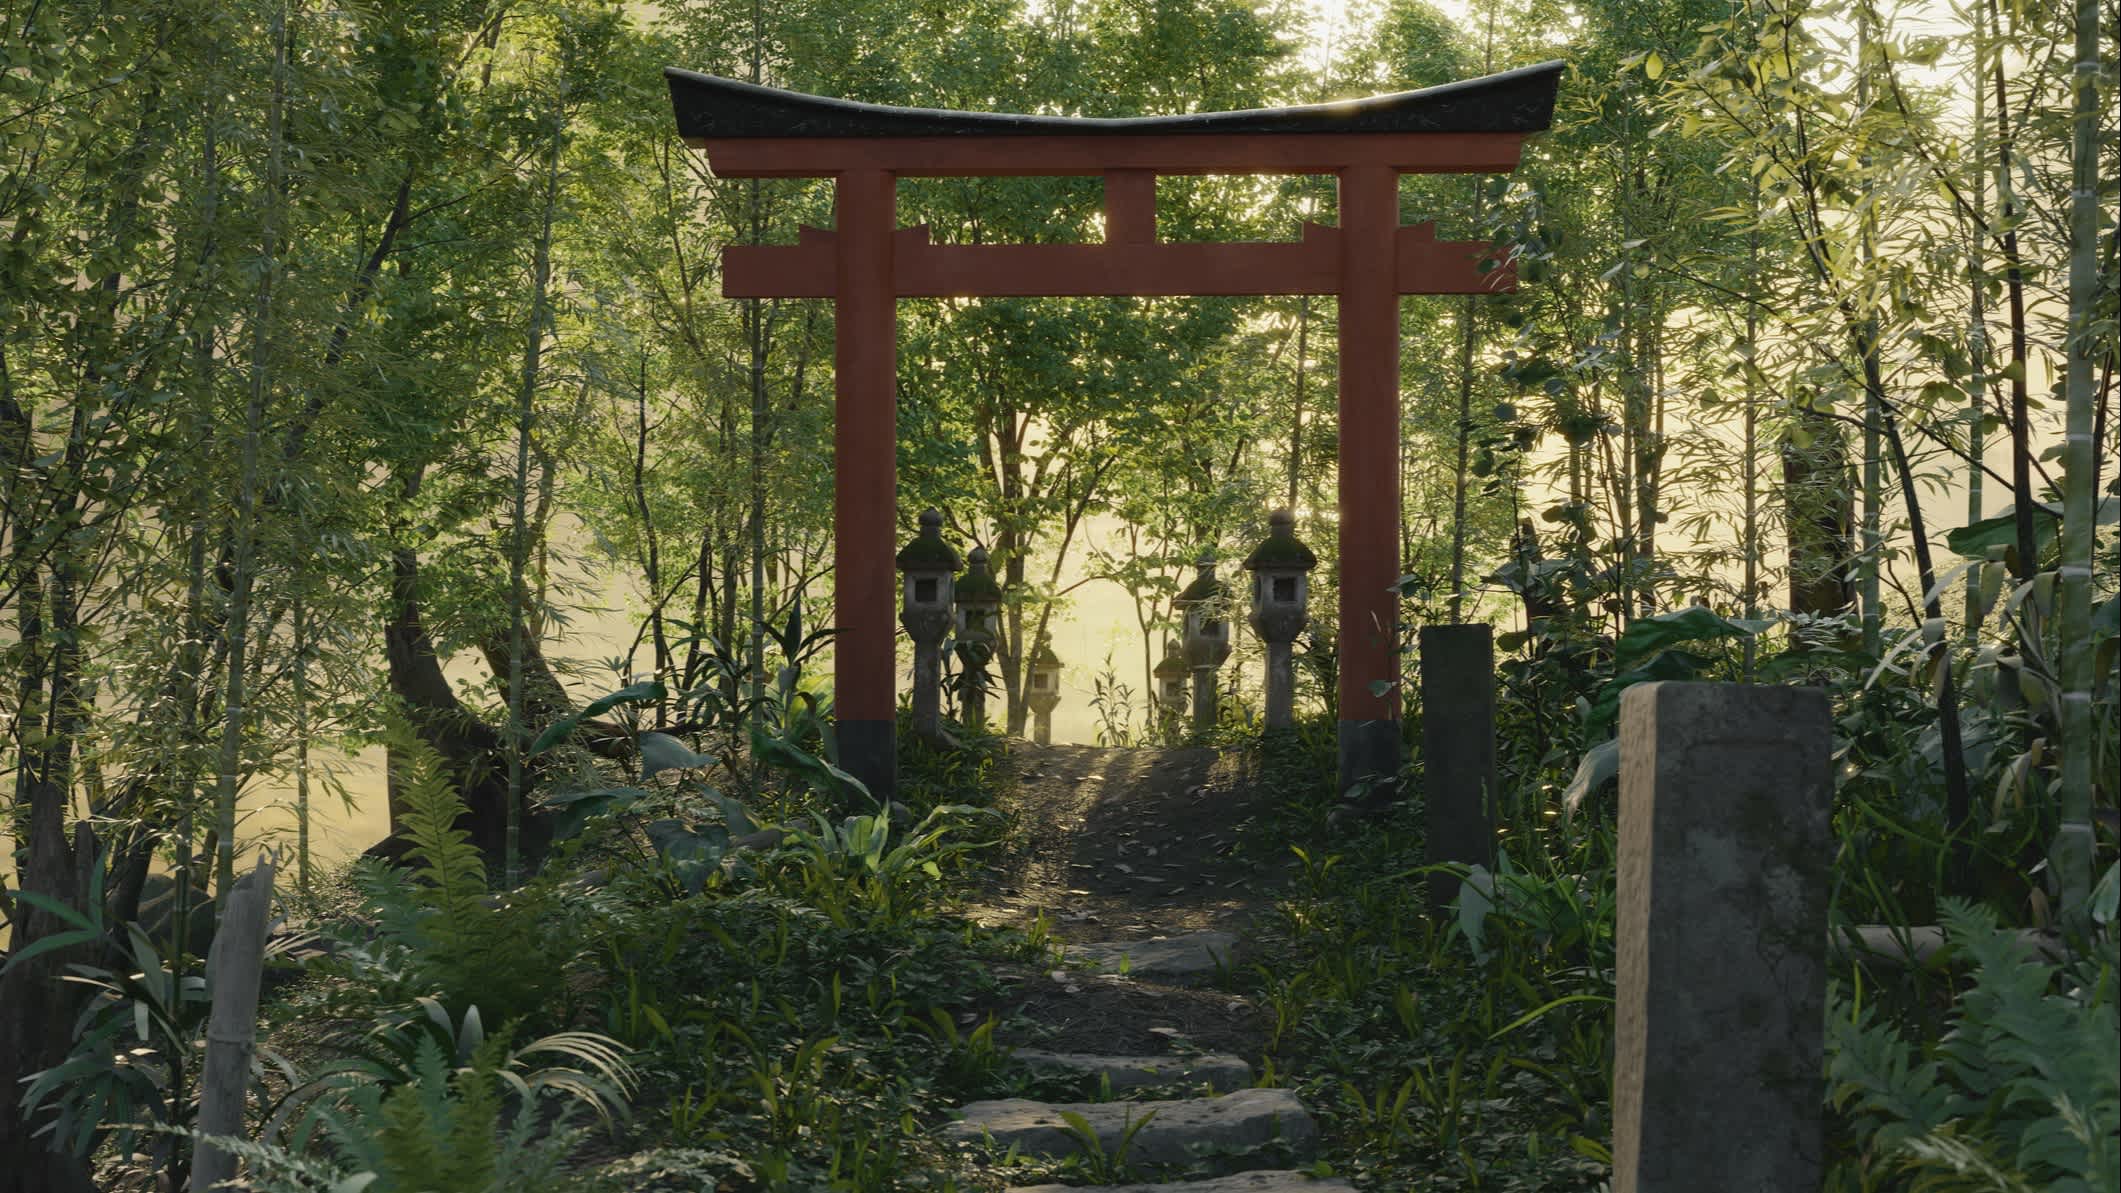 Chemin naturel devant la porte Torii dans une forêt dense, Japon